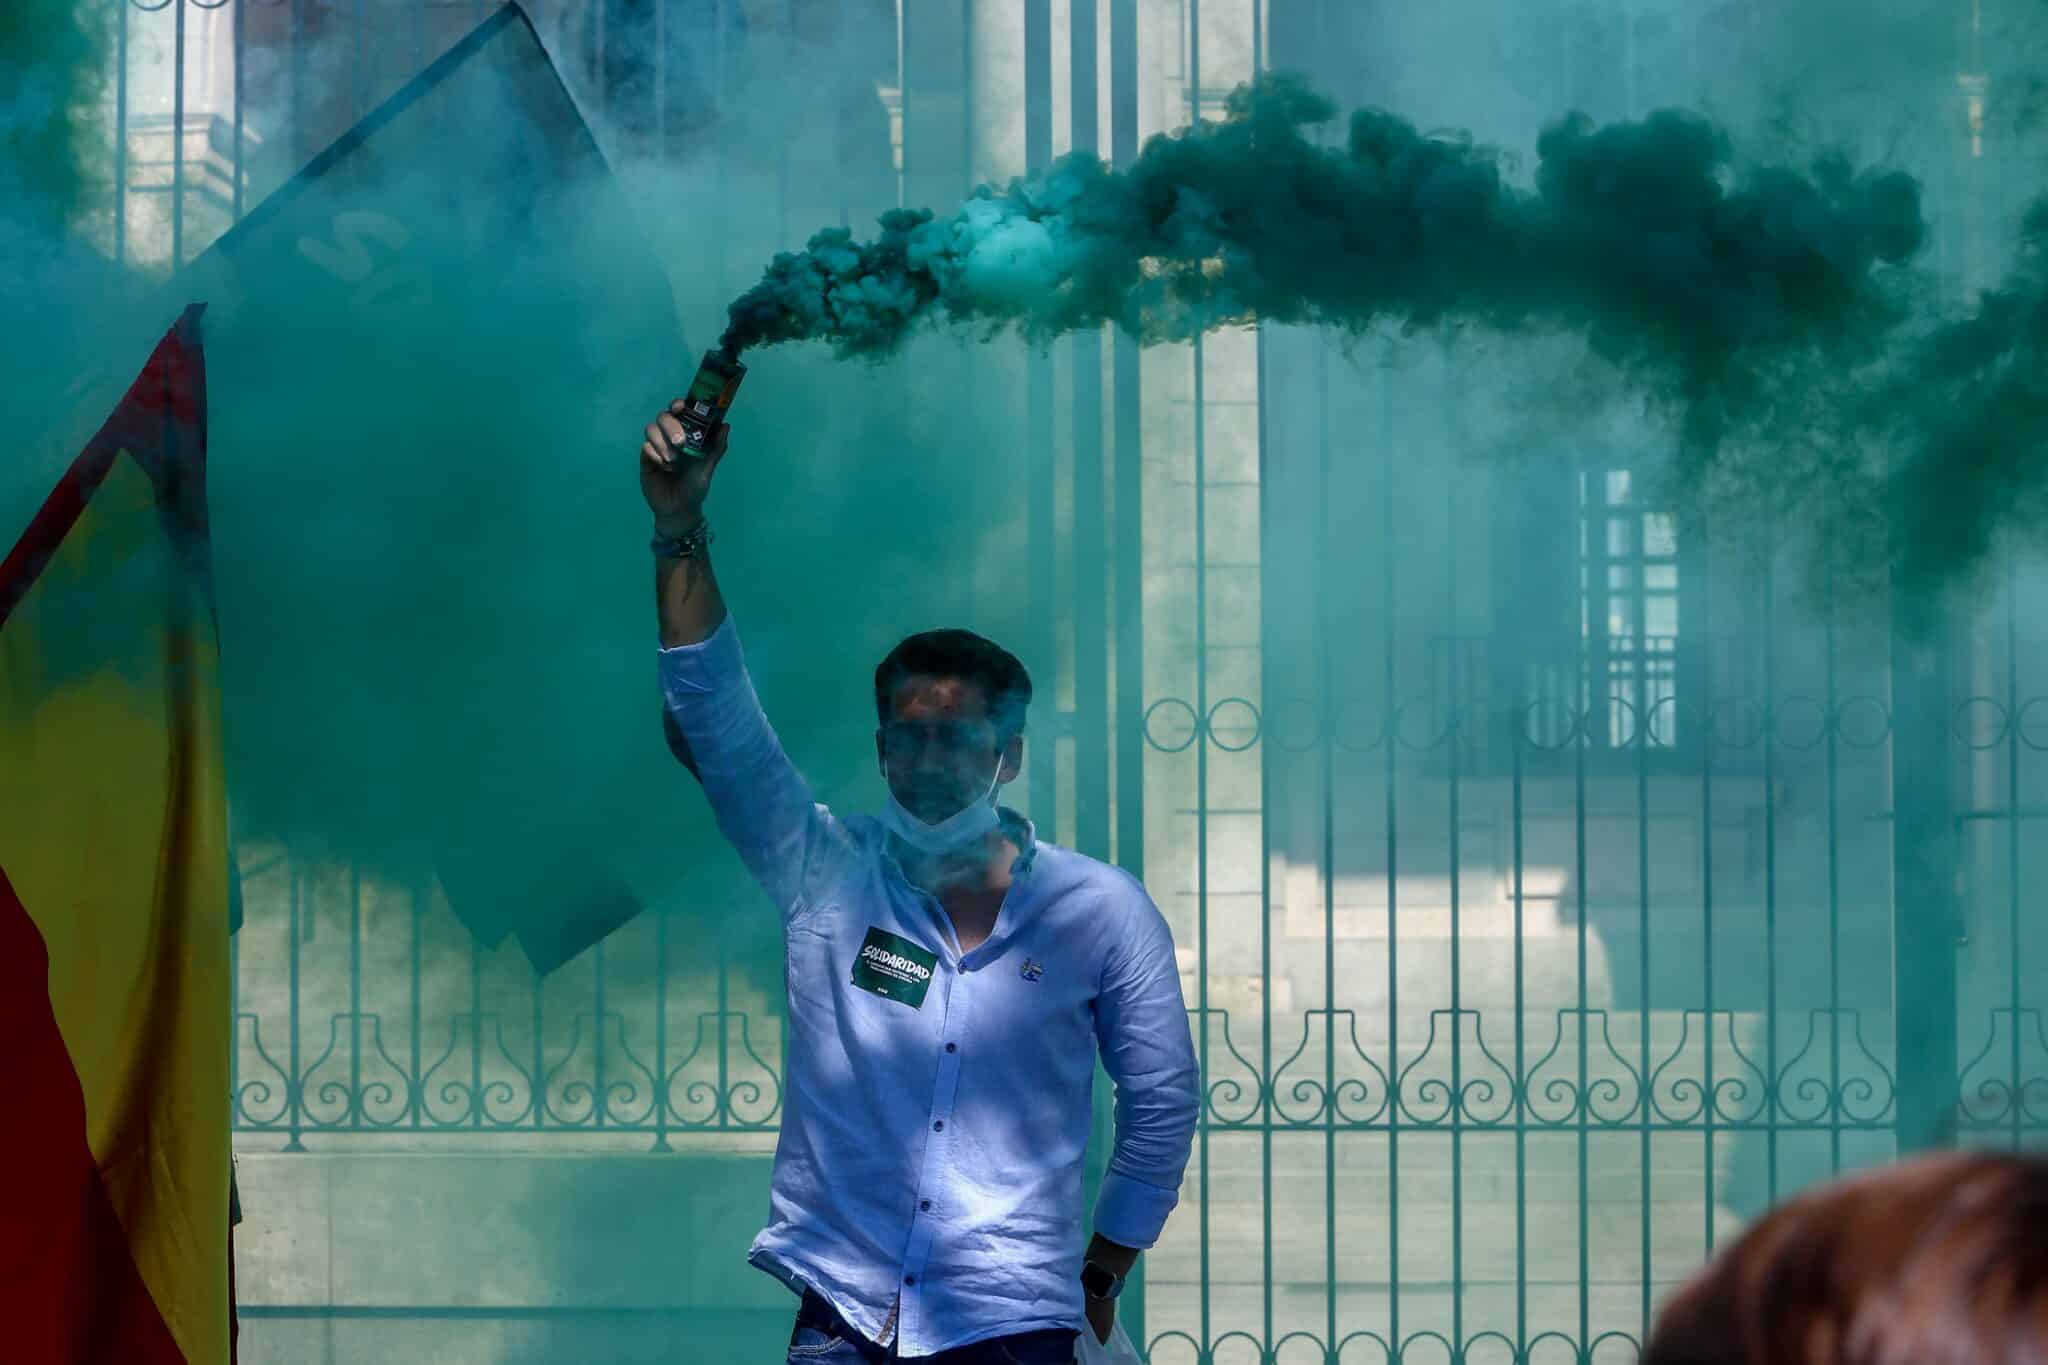 Un hombre lanza humo de color verde en una manifestación convocada por Solidaridad, el sindicato adscrito a Vox.